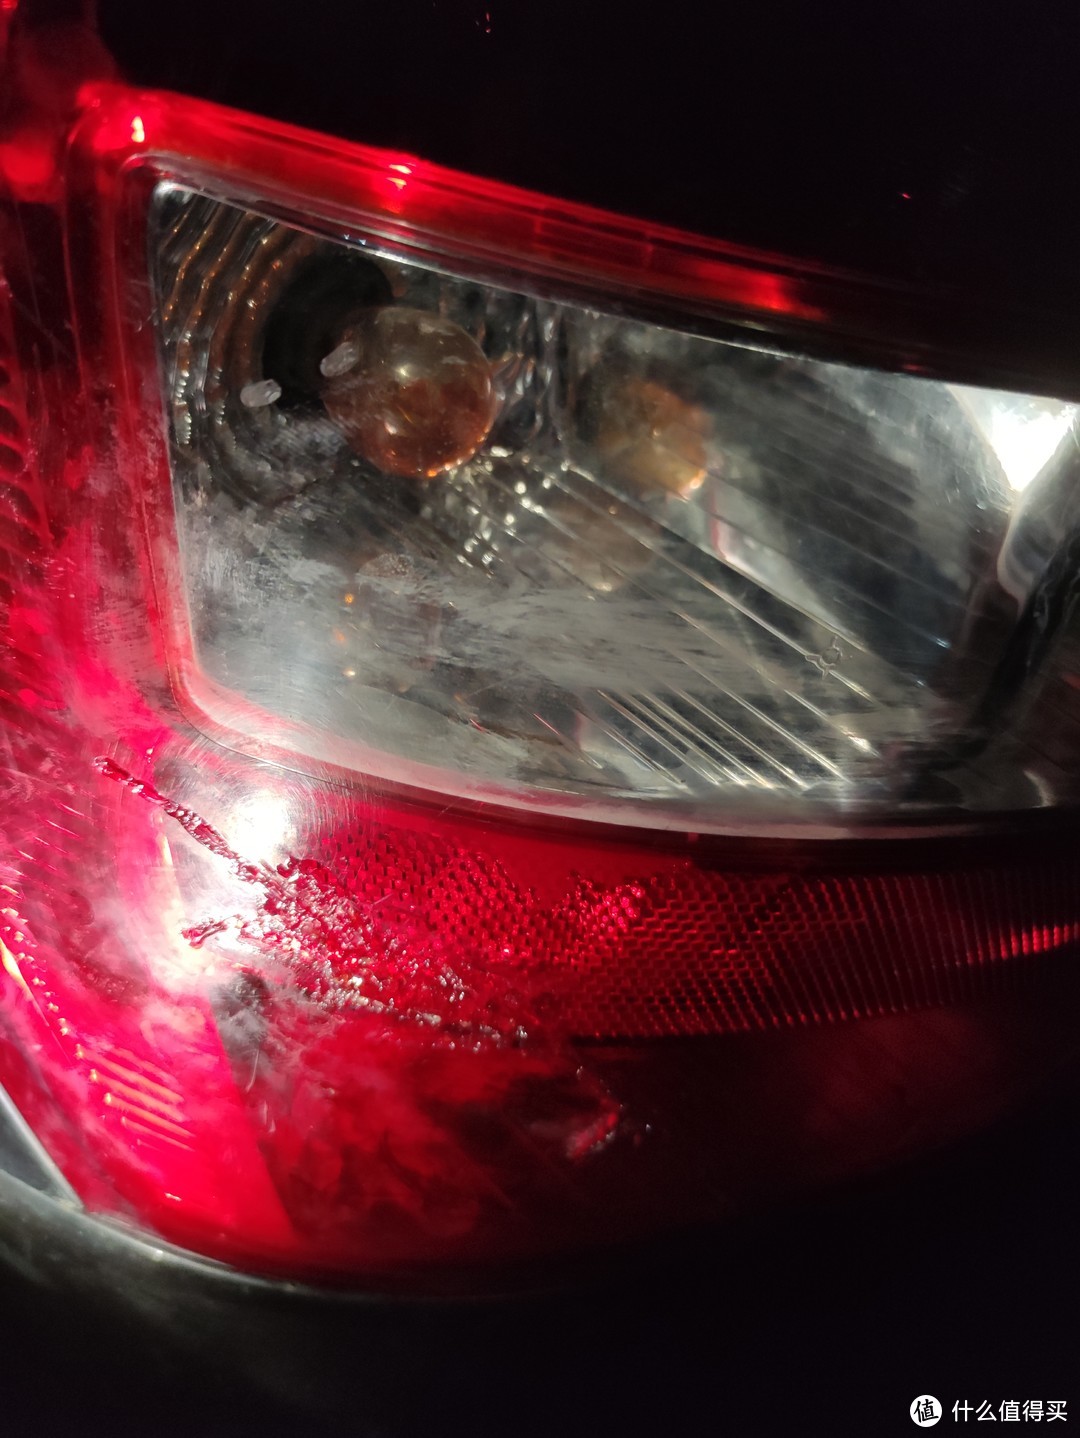 汽车灯罩修复专用胶水使用和“翻车”分享